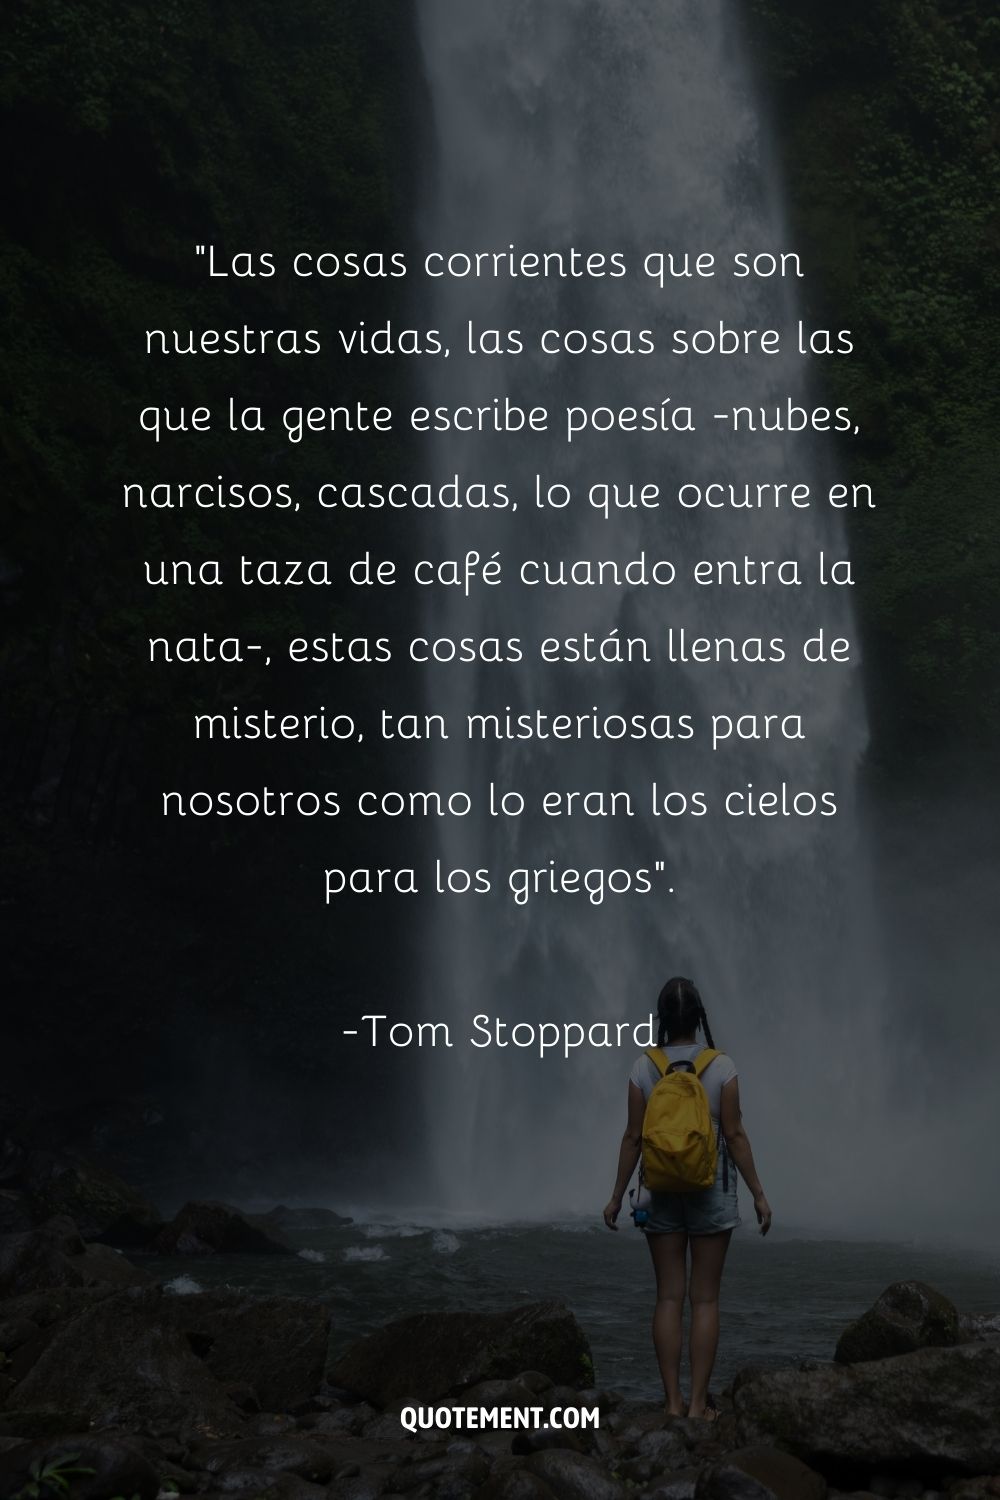 Increíble cita de Tom Stoppard y una mujer junto a la cascada en el fondo también